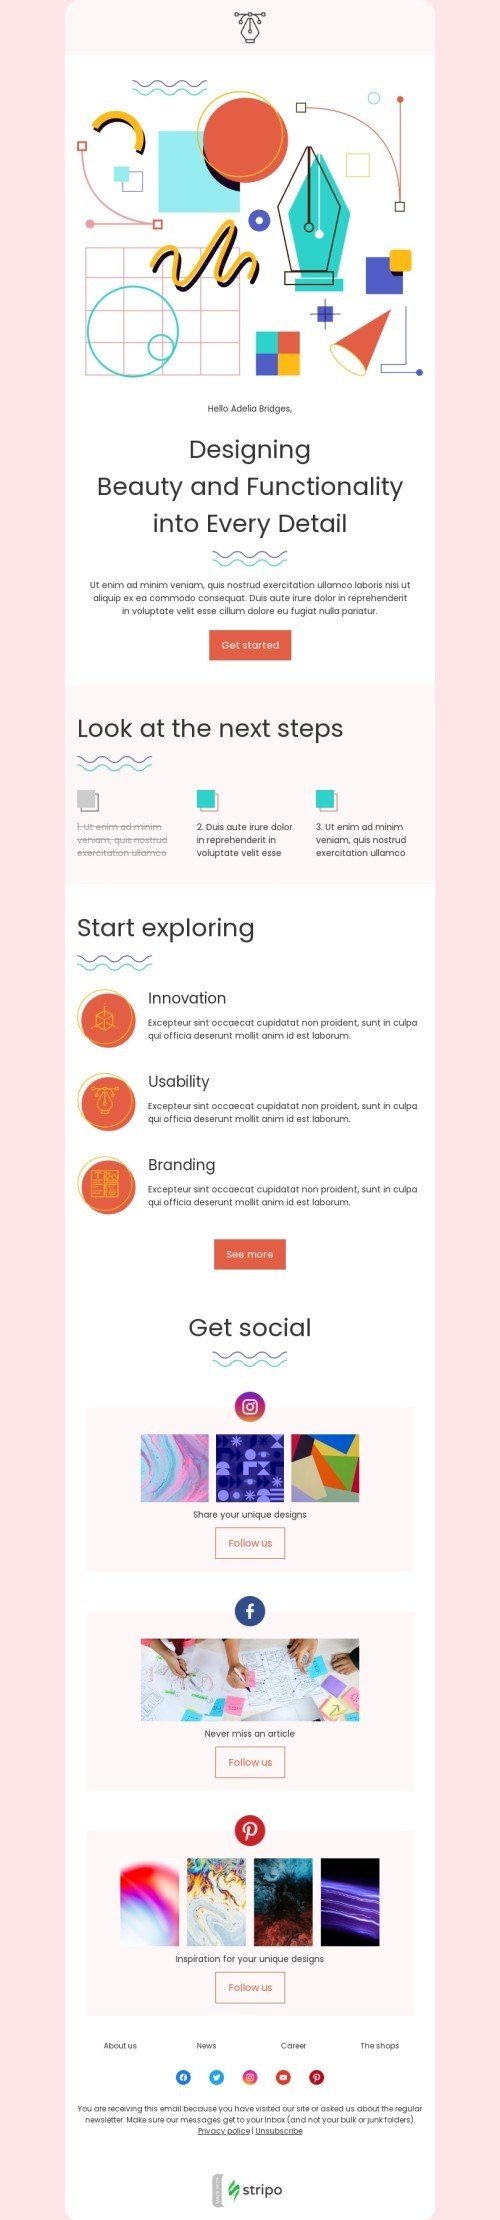 Modèle de courrier électronique Journée des médias sociaux «Regardez les prochaines étapes» pour le secteur business Affichage mobile